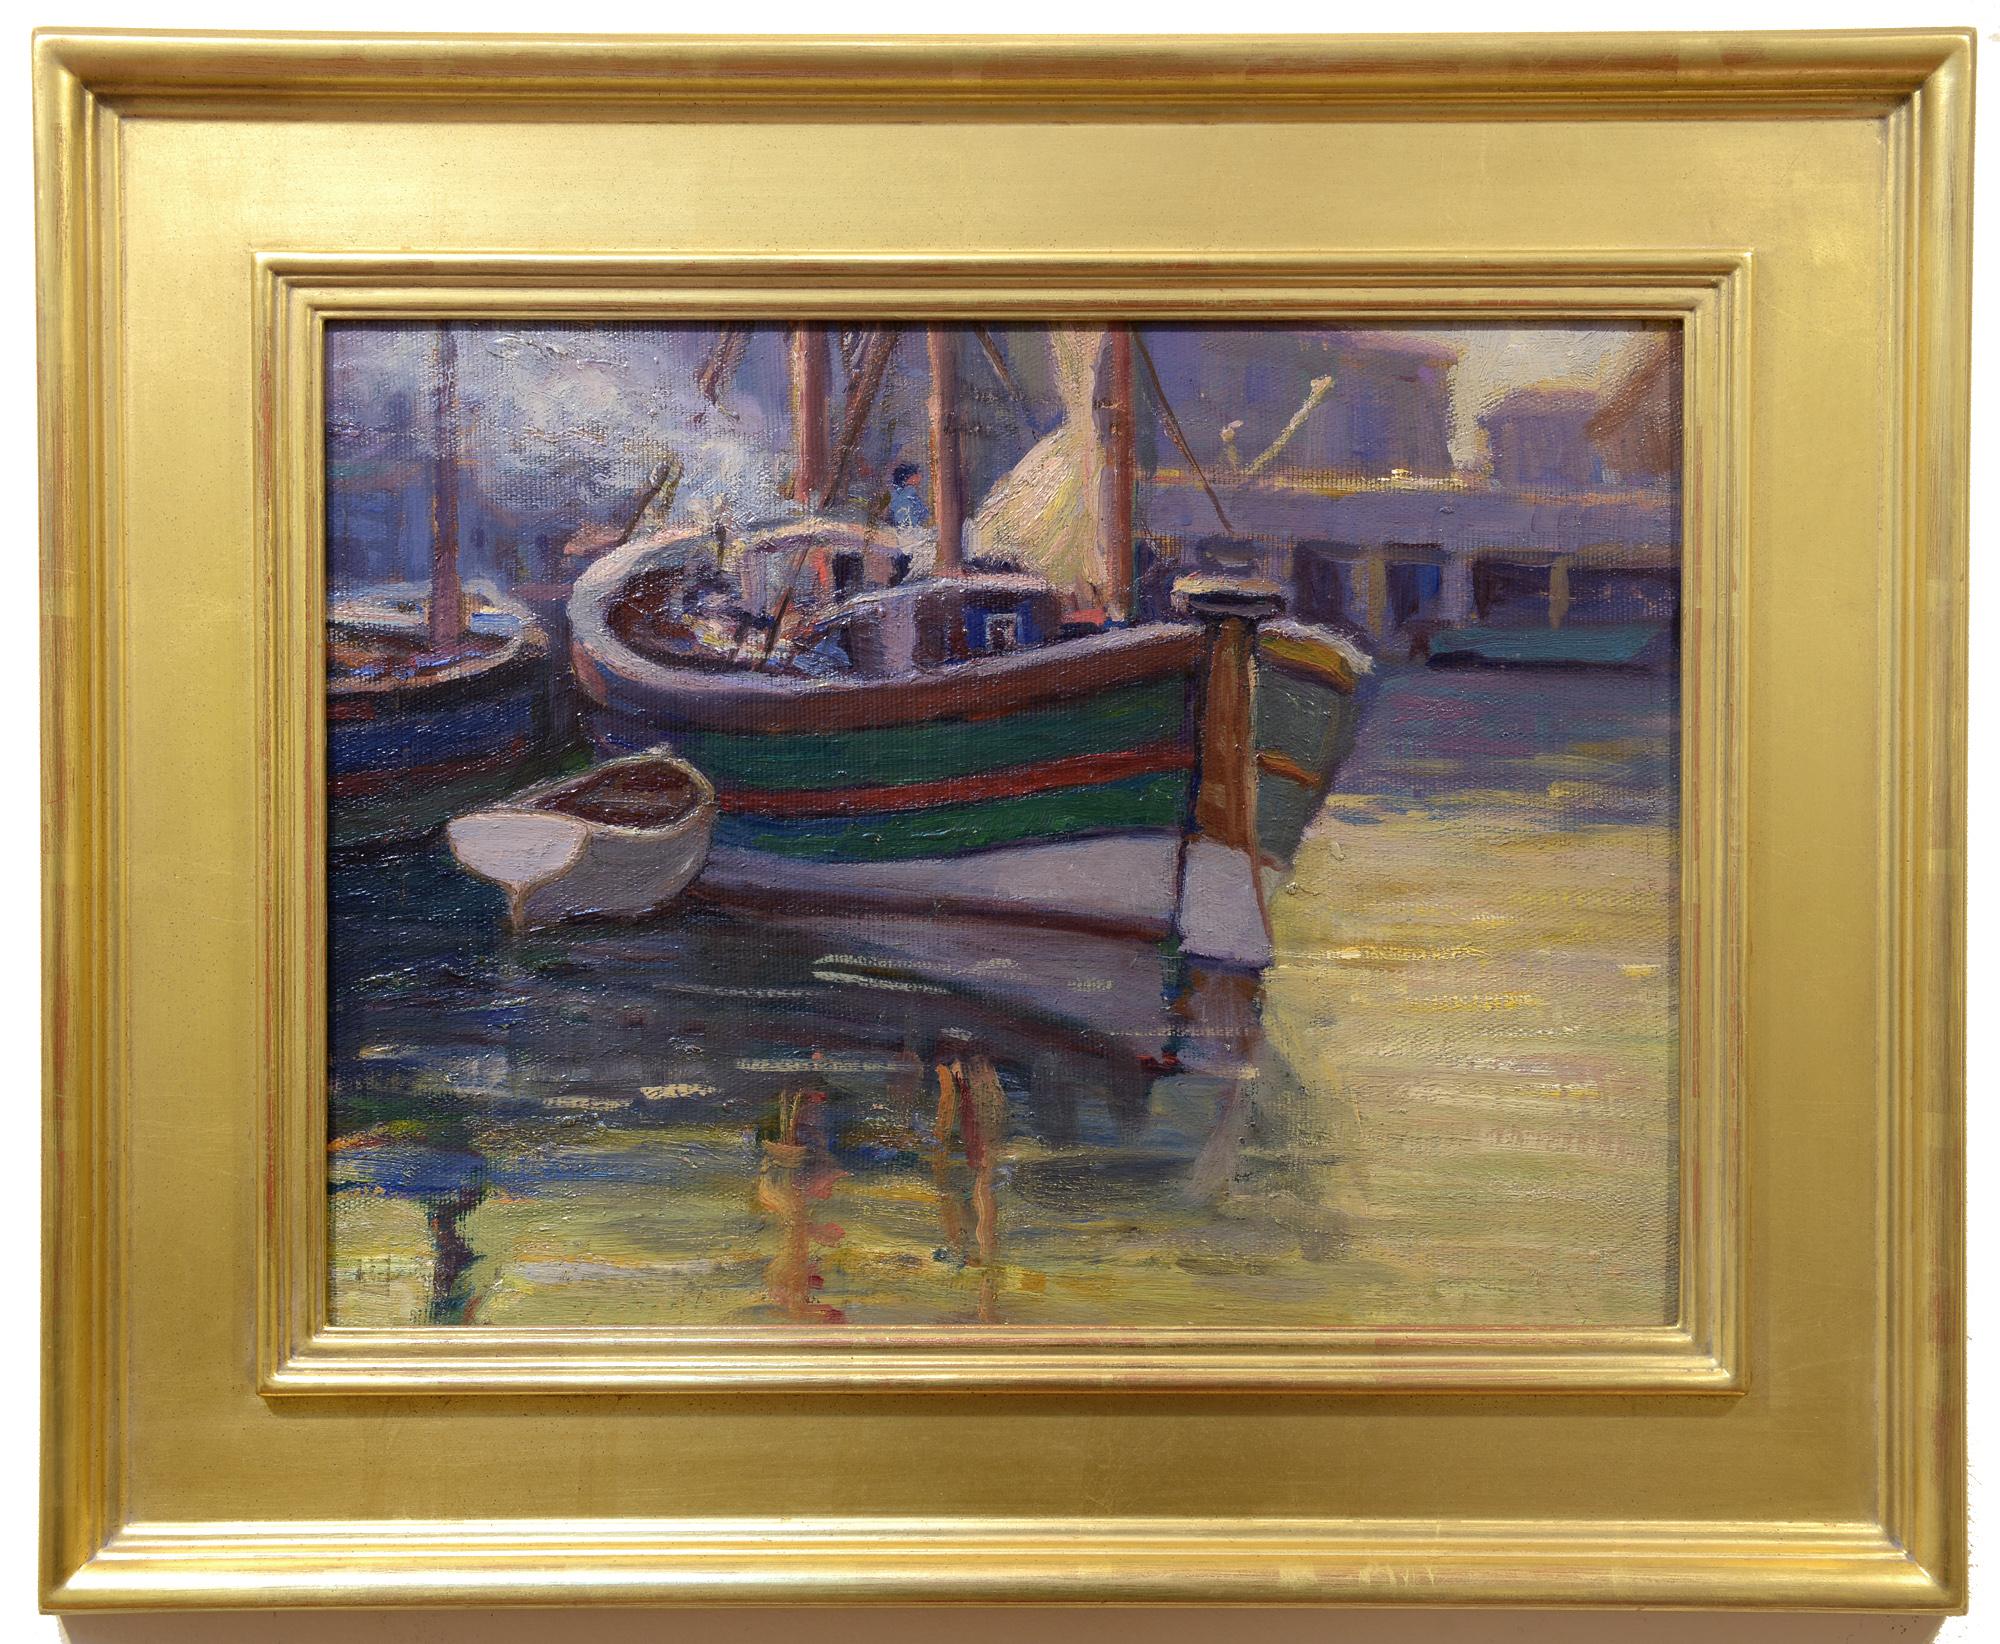 Harborfront, amerikanischer Impressionist, 20. Jahrhundert, Holzsegelschiffe in Dock – Painting von Unknown